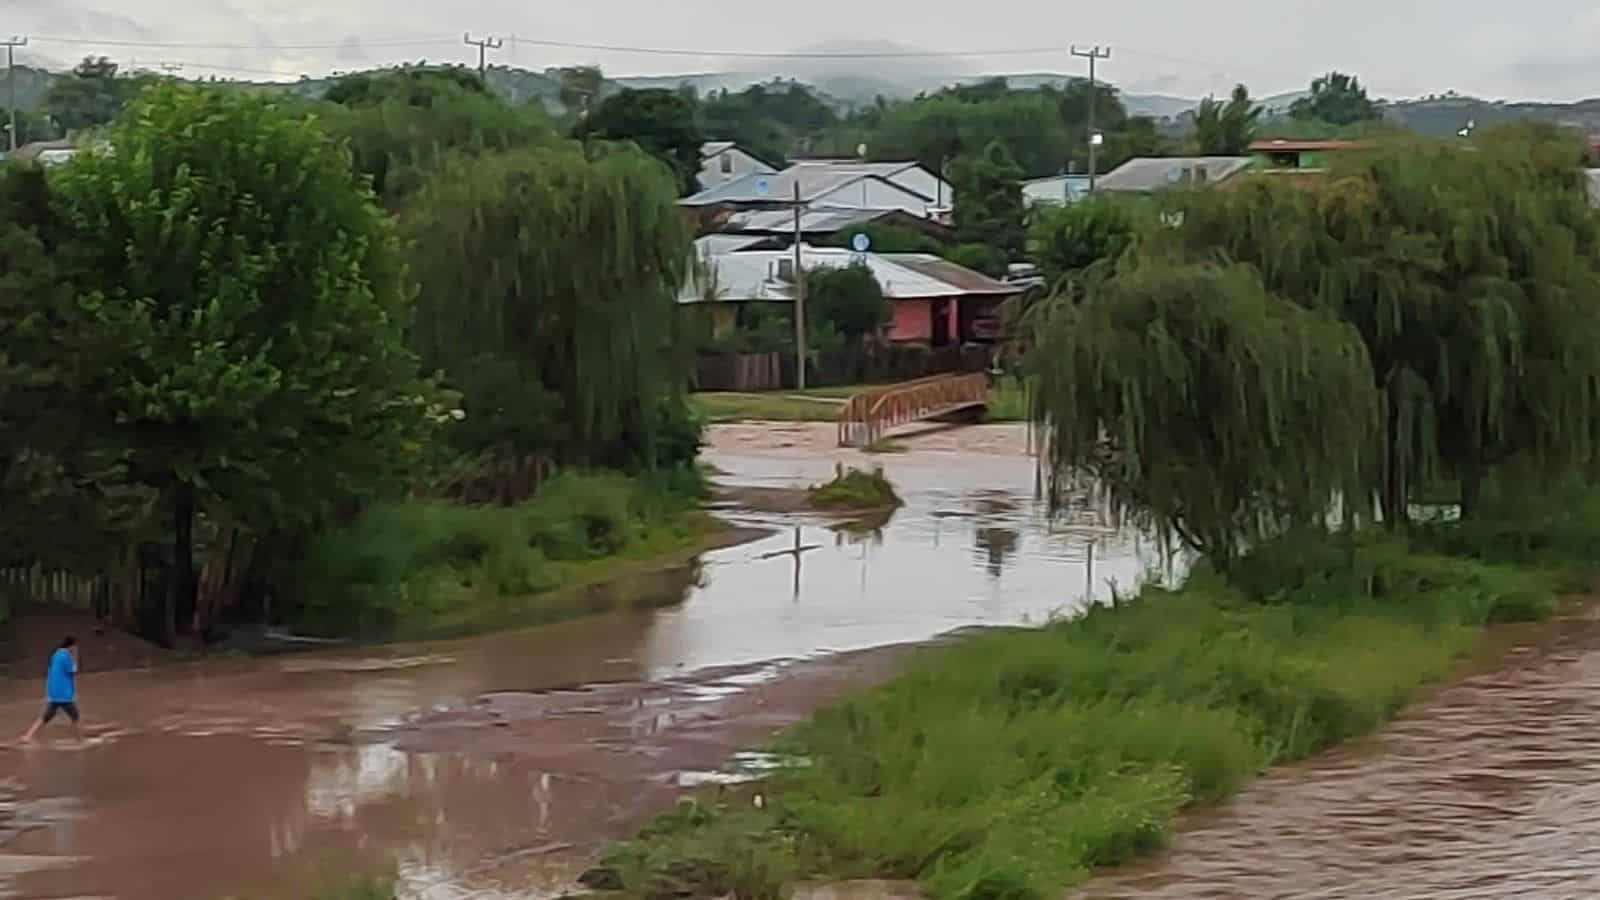 Inundaciones y zonas incomunicadas dejaron lluvias en Yécora